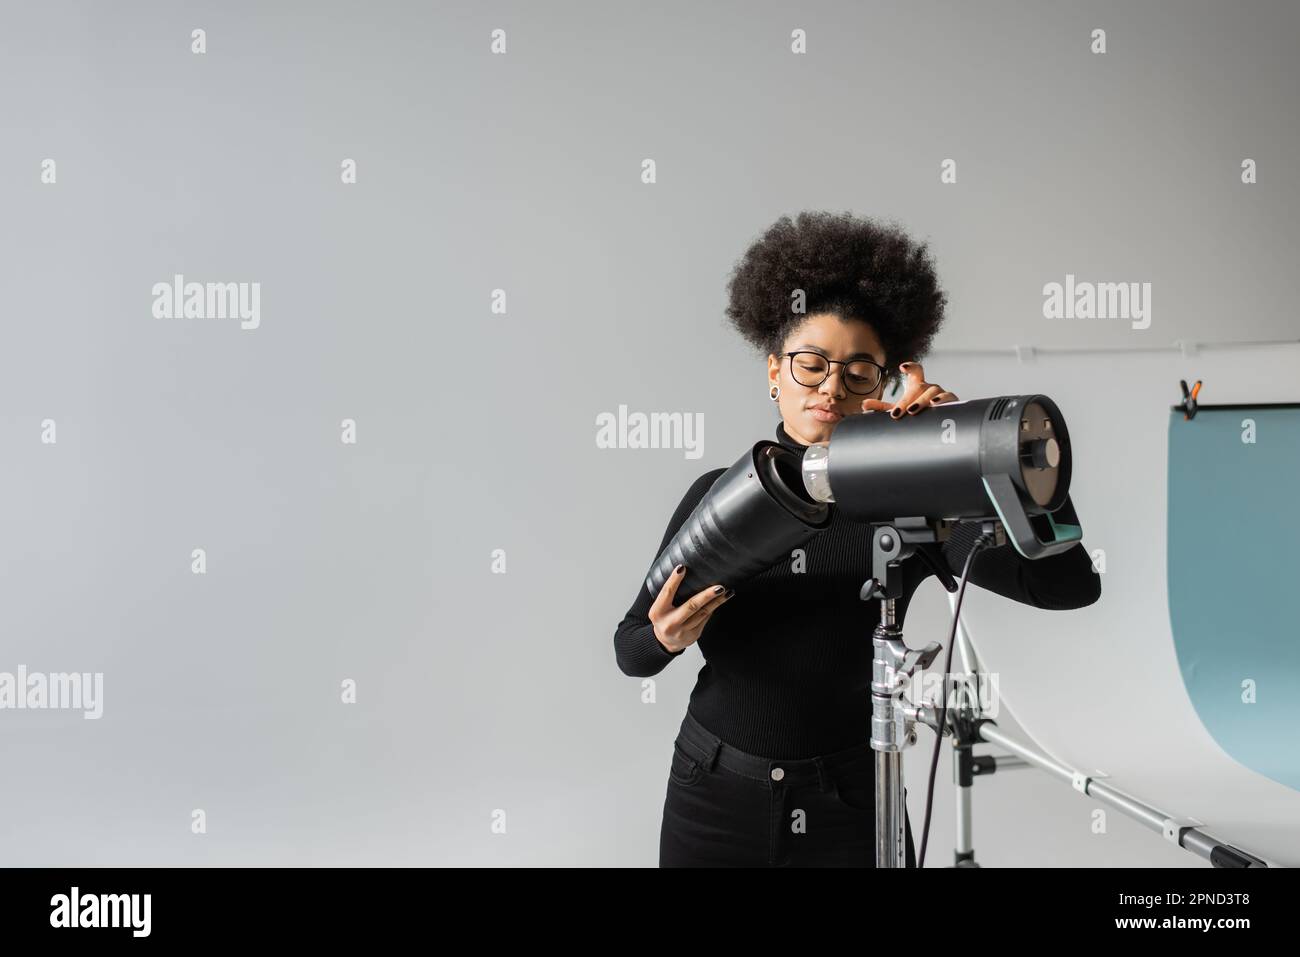 gestionnaire de contenu afro-américain assemblant lampe stroboscopique tout en travaillant en studio photo, image de stock Banque D'Images